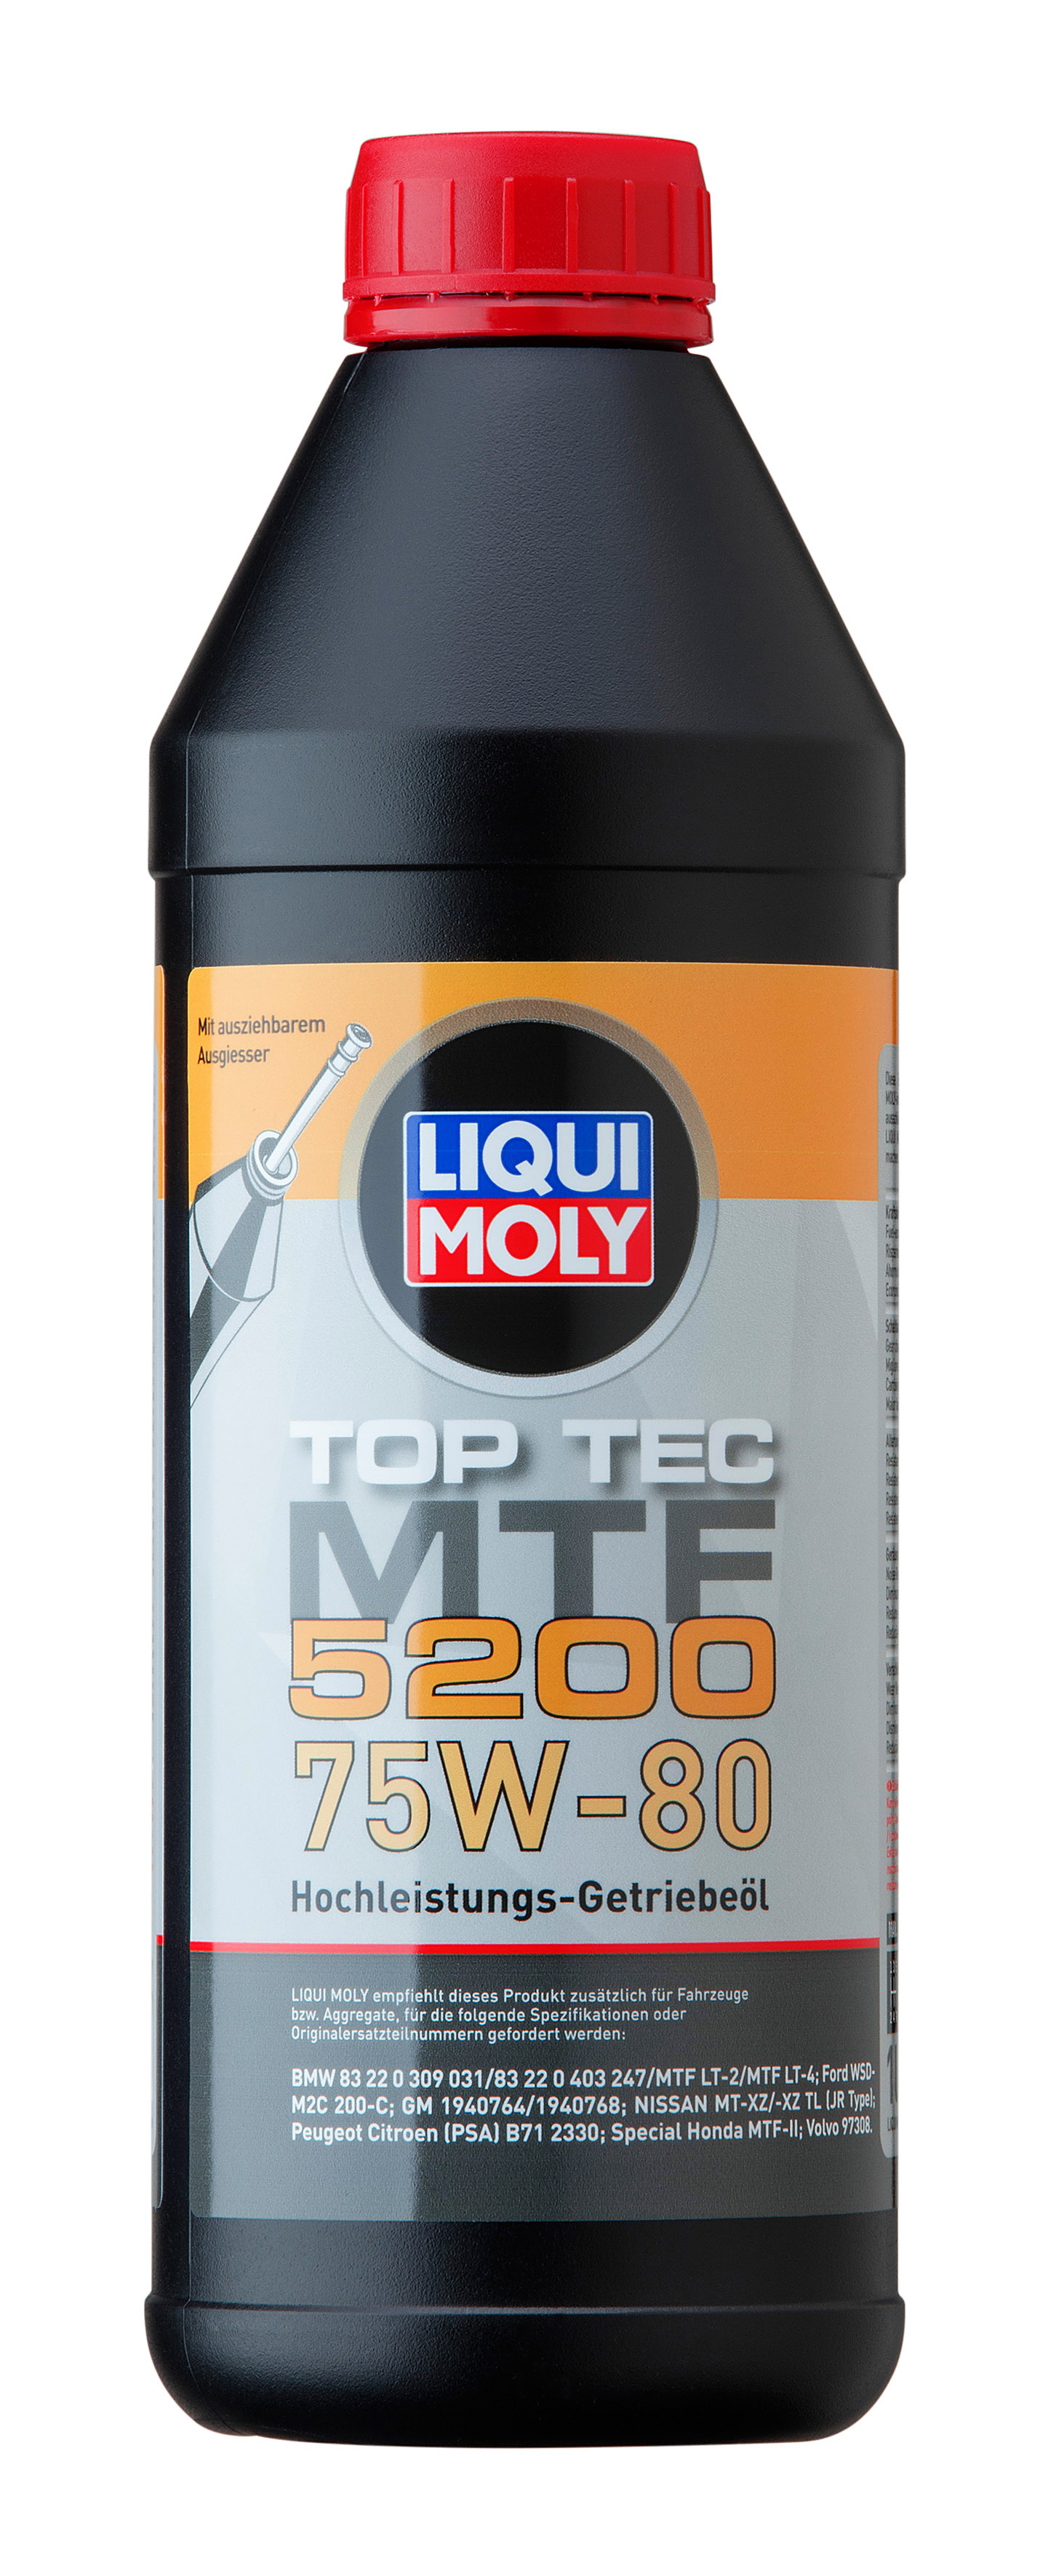 75w-80 GL4 Top Tec MTF 5200, 1л (НС-синт.транс.масло) - Liqui Moly 20845